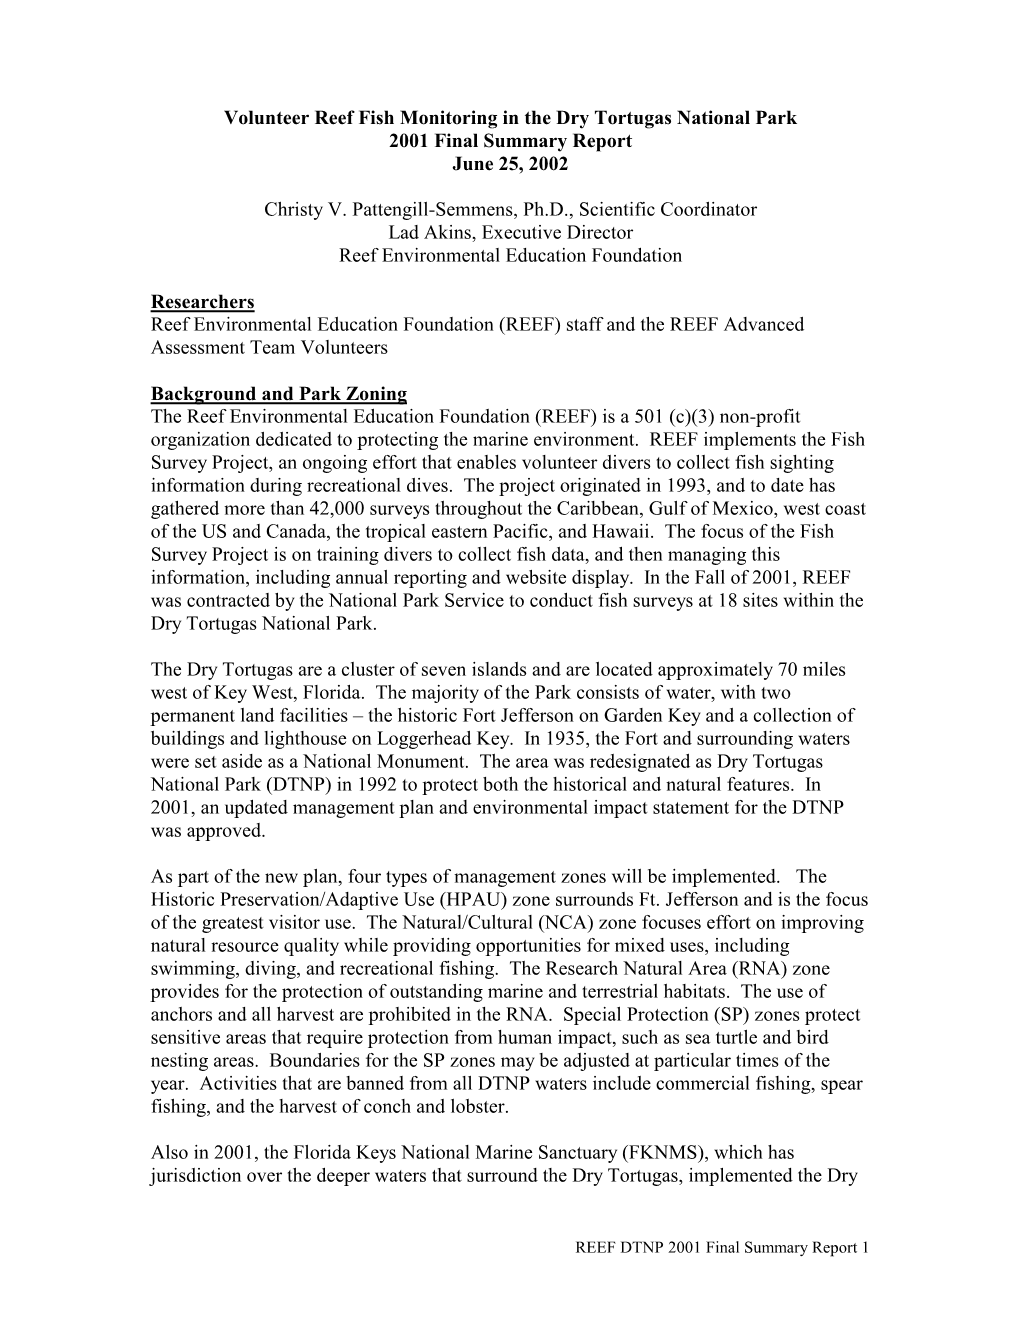 2001 DTNP Final Report